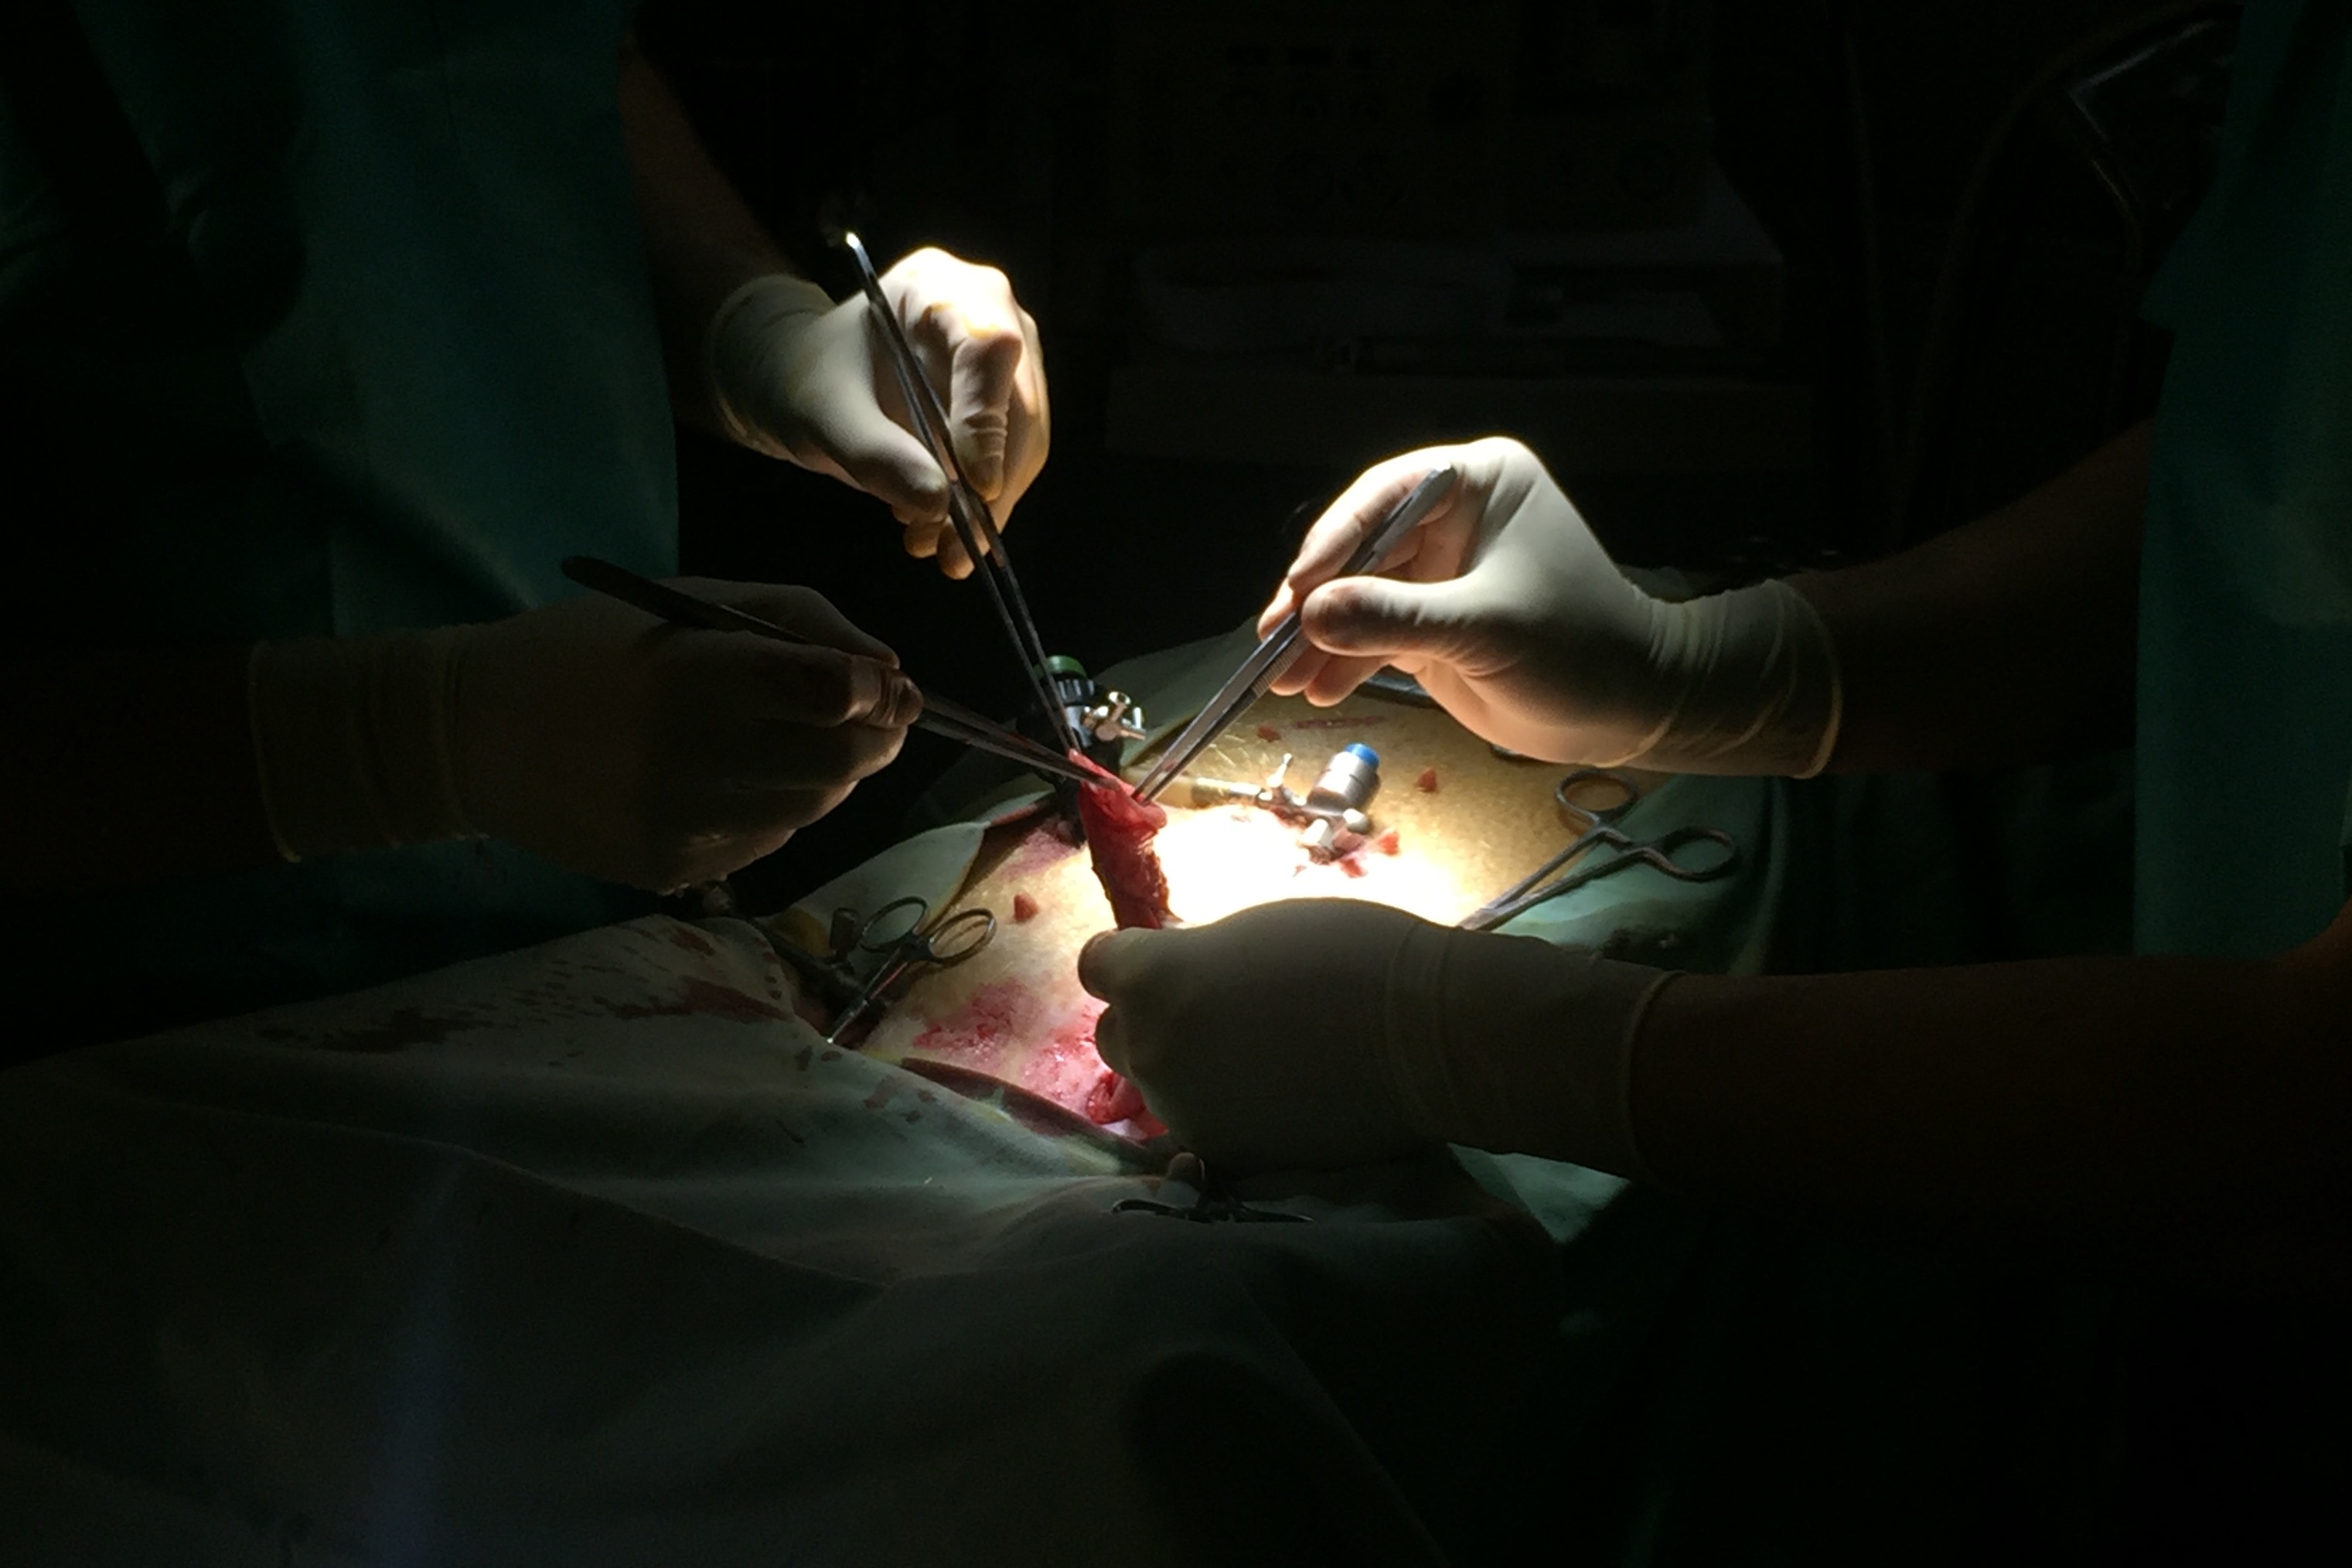 Chirurgové zkoušejí na praseti experimentálně ověřit postup ošetření poškozené anastomózy